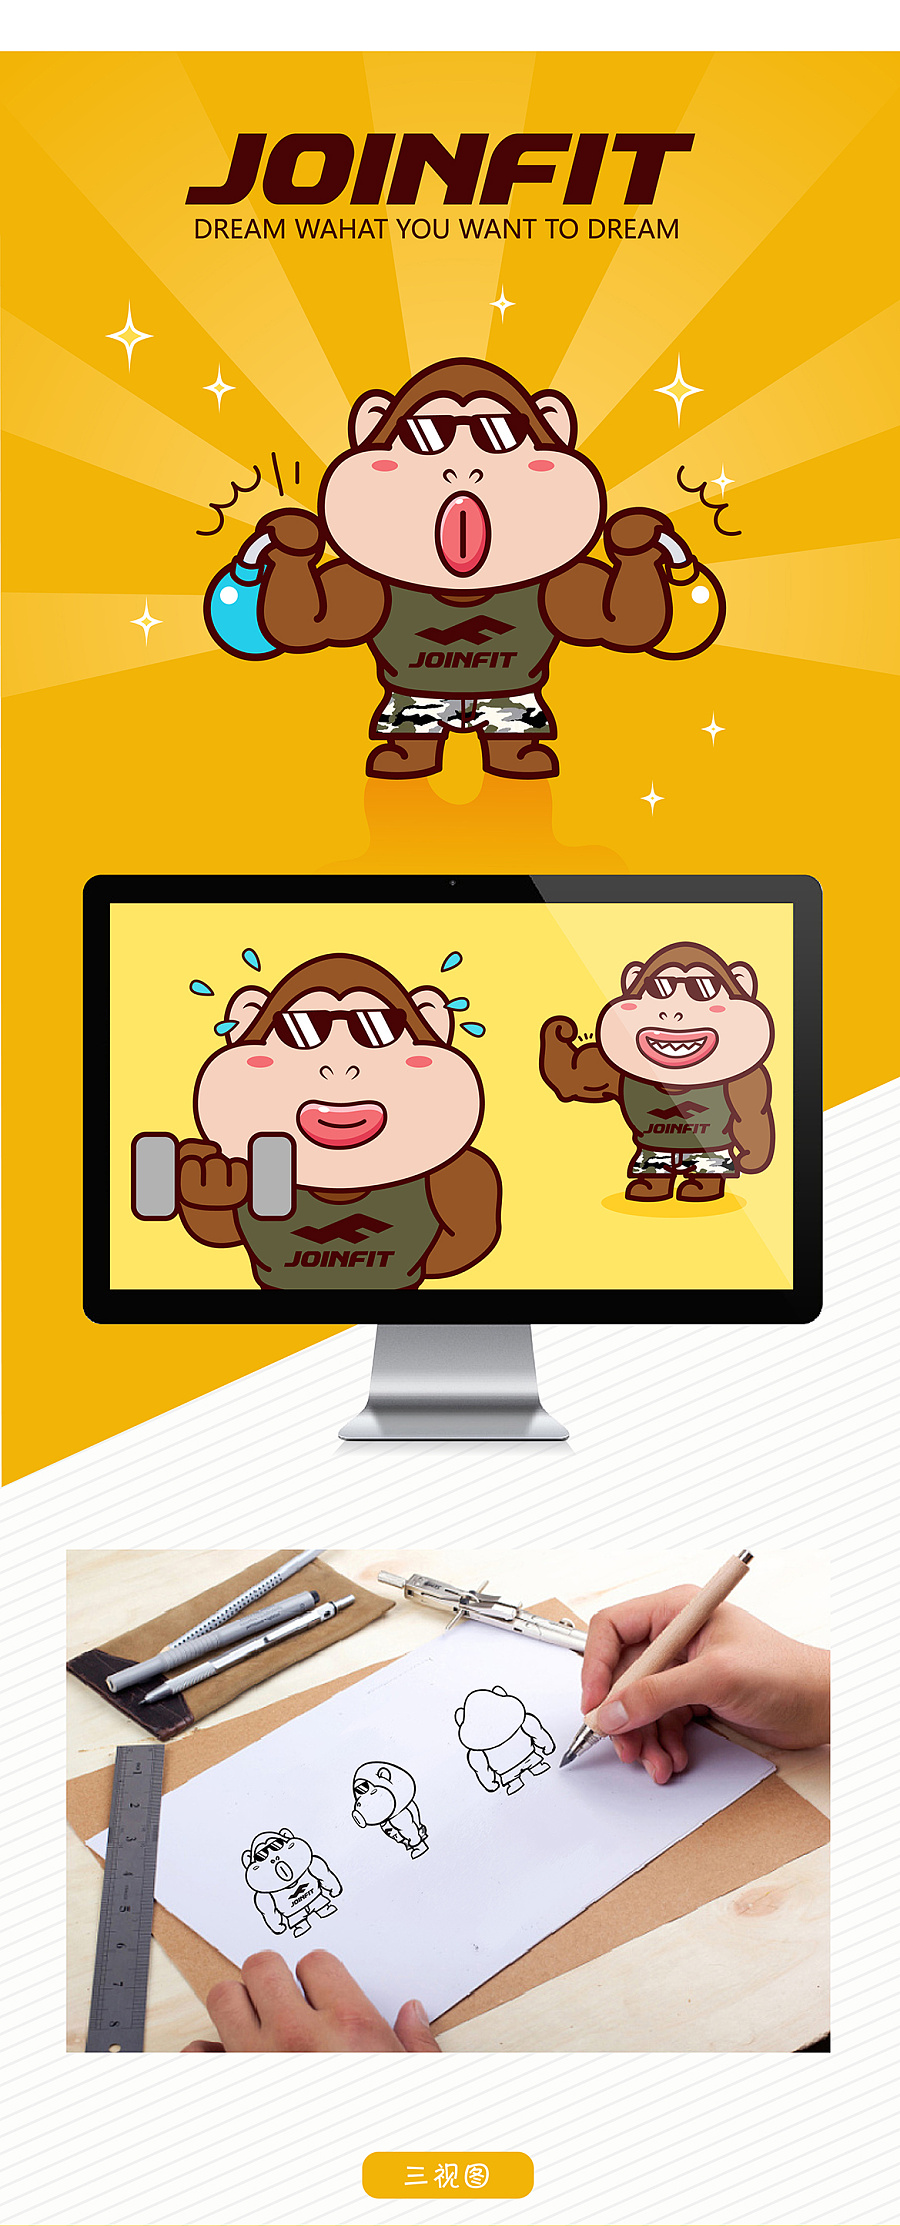 JOINFIT健身器材品牌卡通形象吉祥物设计微信